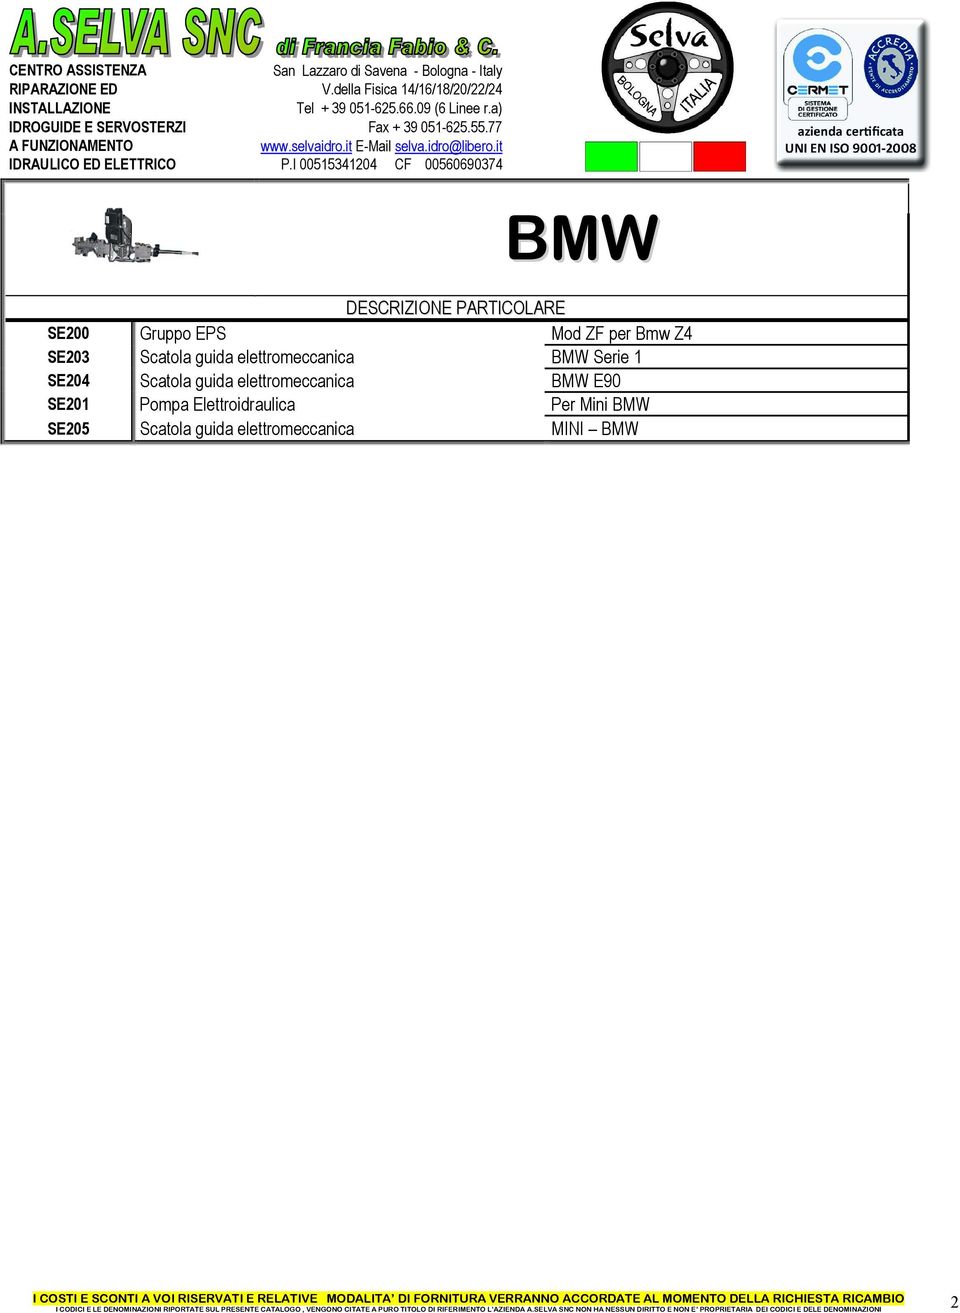 Scatola guida elettromeccanica BMW E90 SE201 Pompa